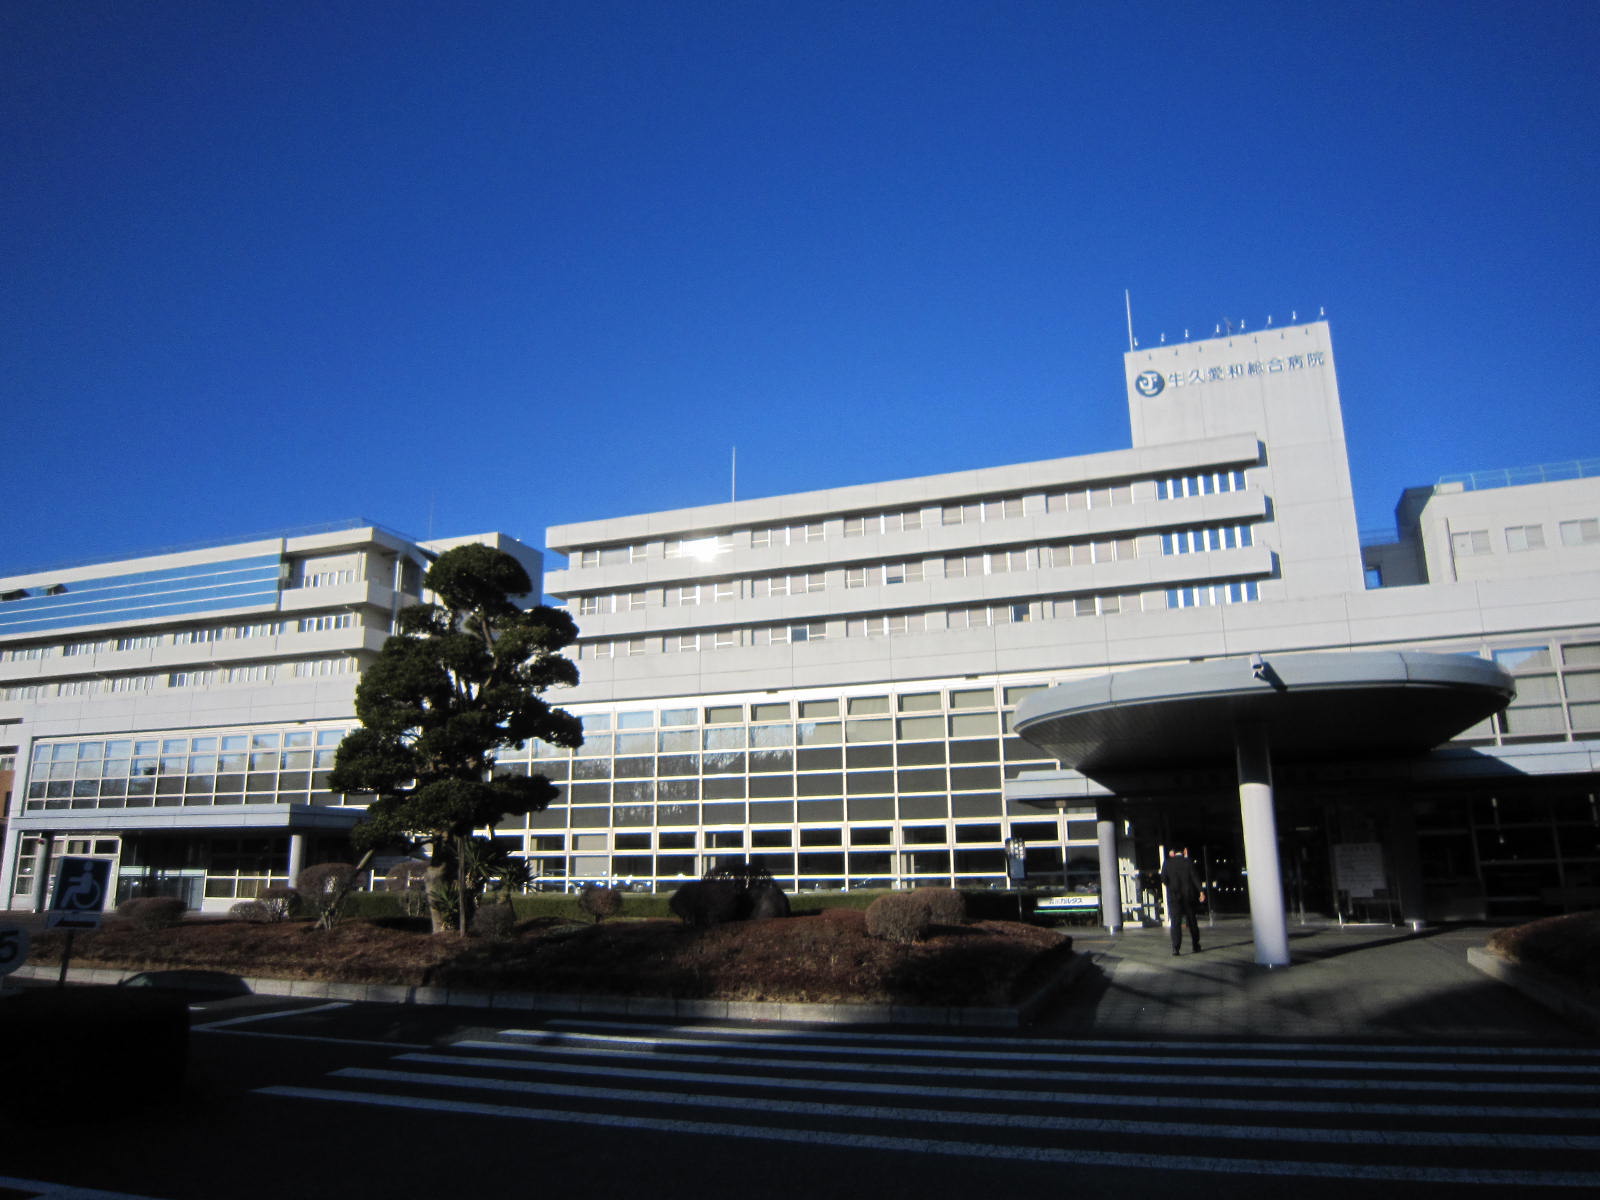 Hospital. Ushikuaiwasogobyoin until the (hospital) 1433m